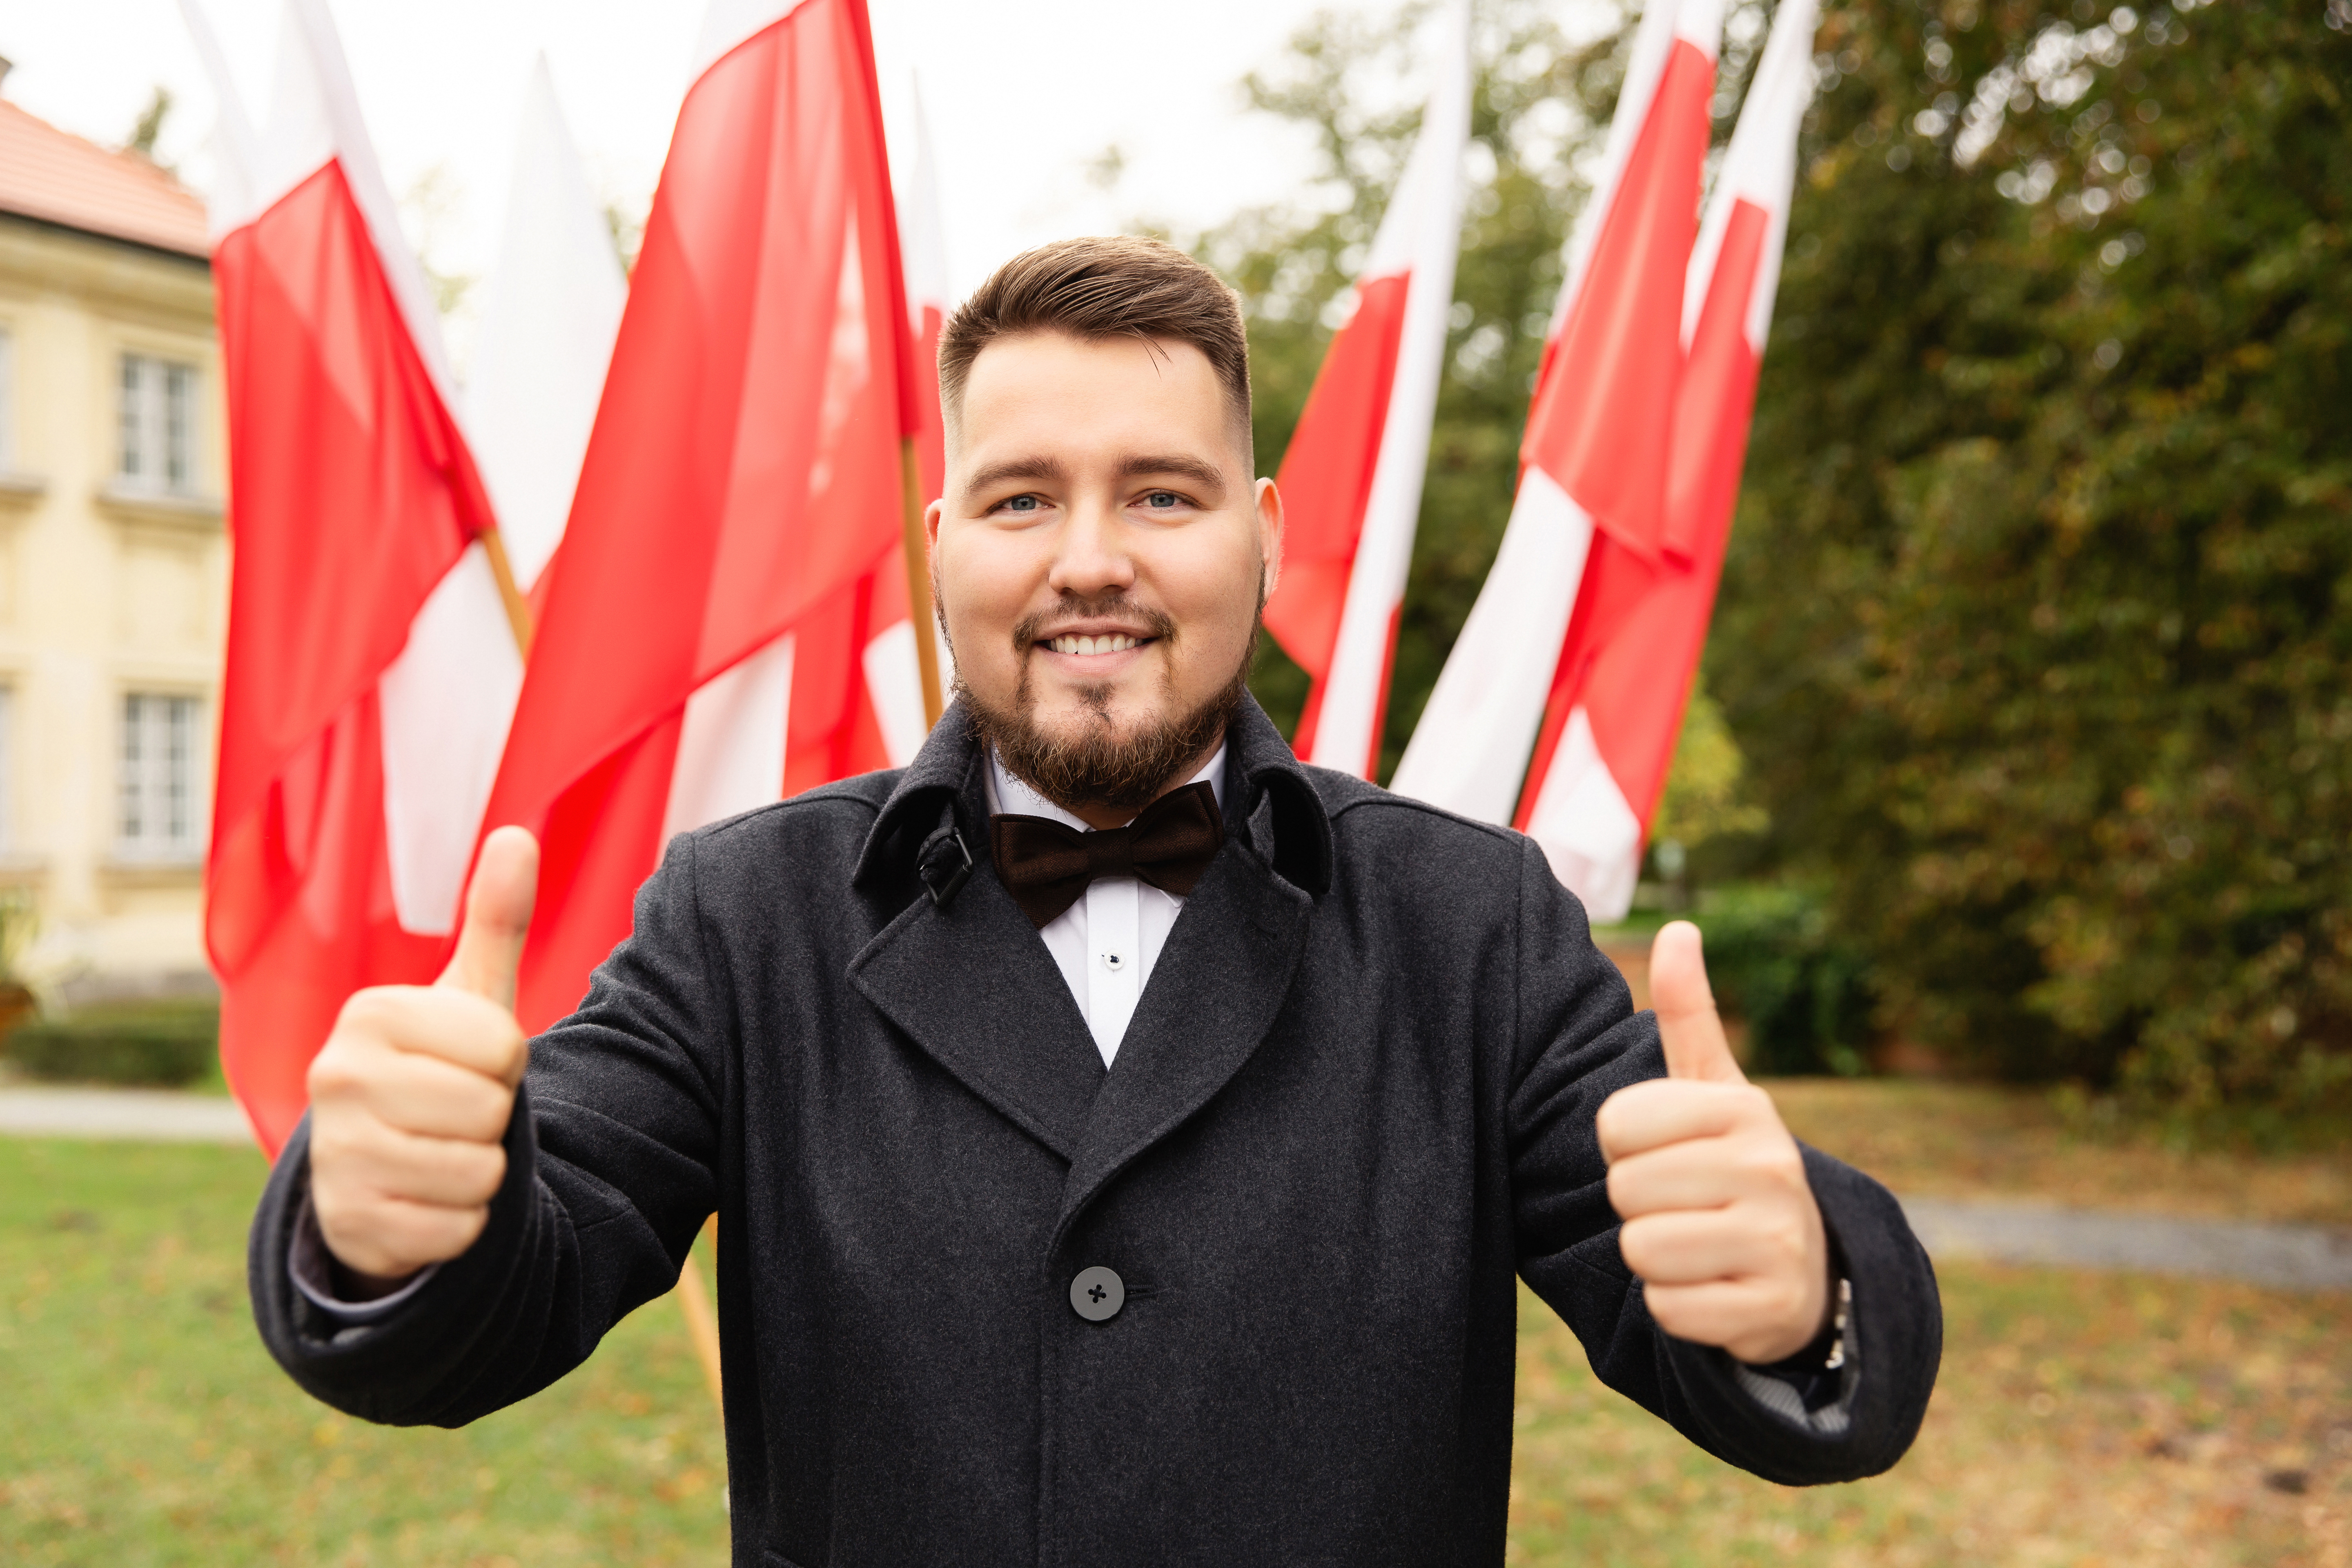 Парень на фоне флагов Польши, куда могут иммигрировать иностранцы